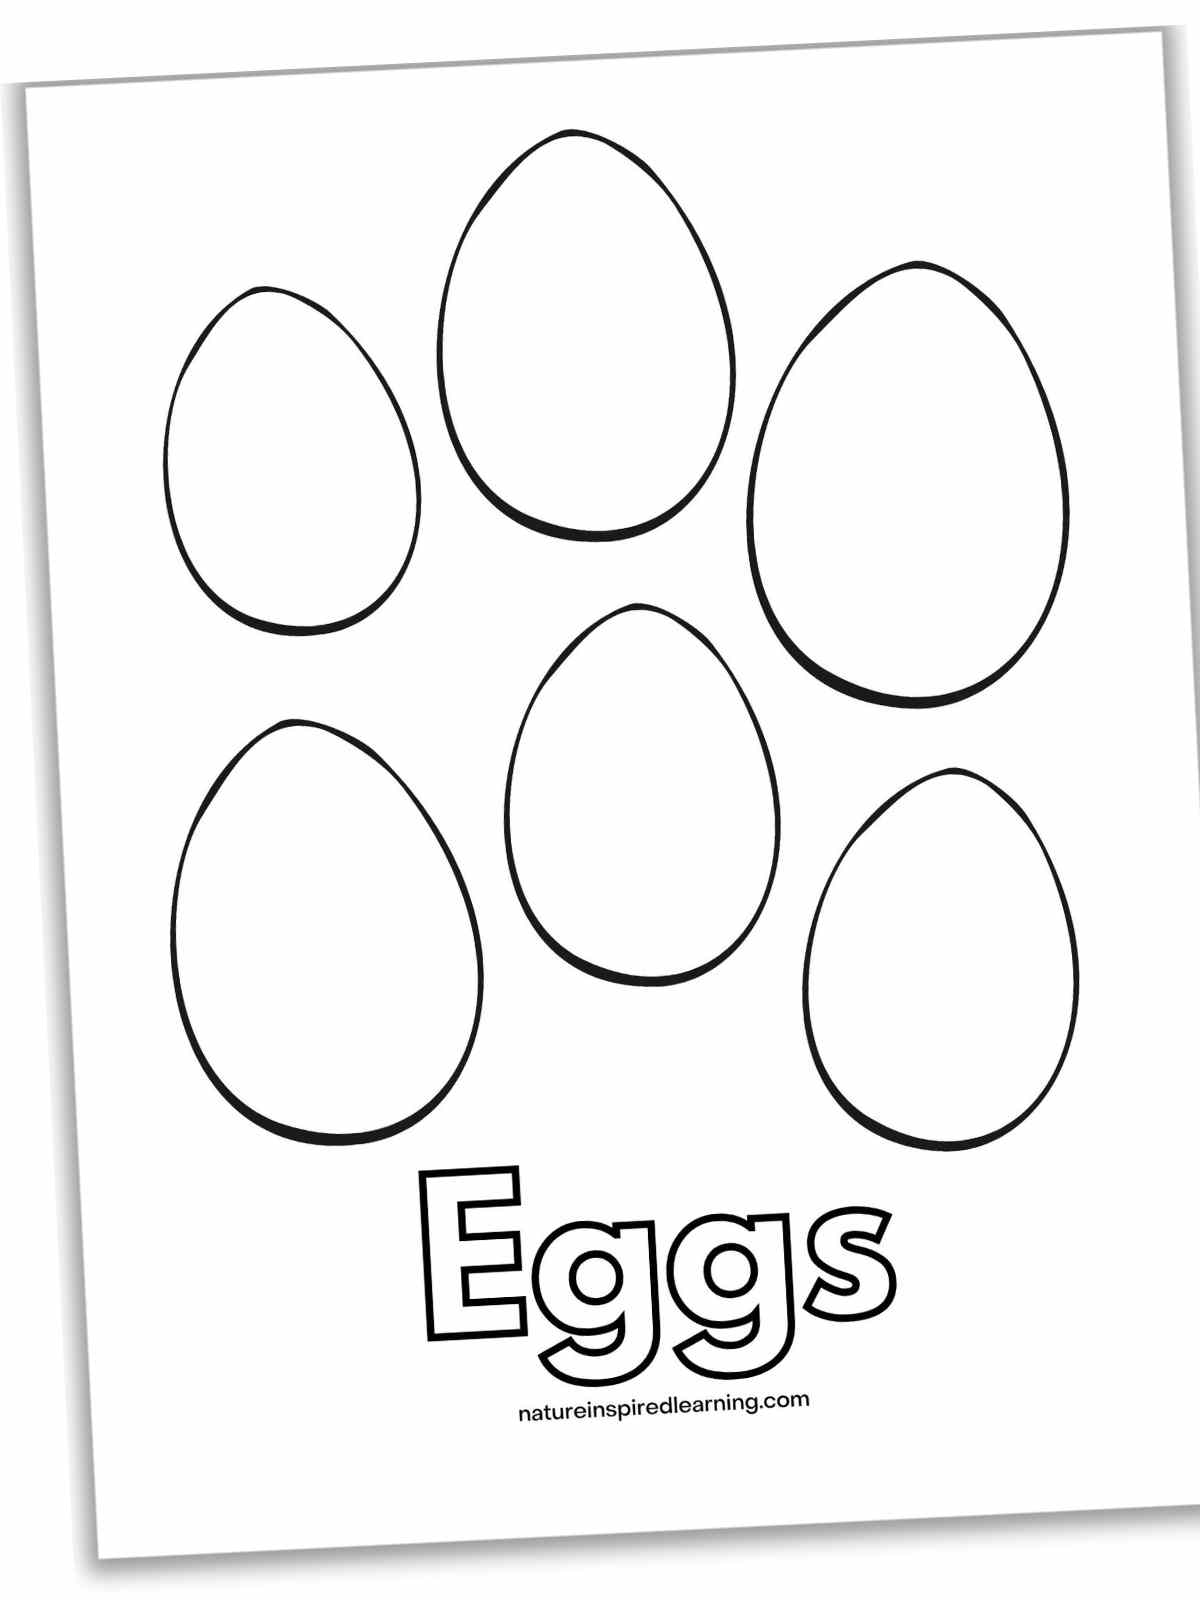 six eggs randomly arranged above Eggs written in outline form